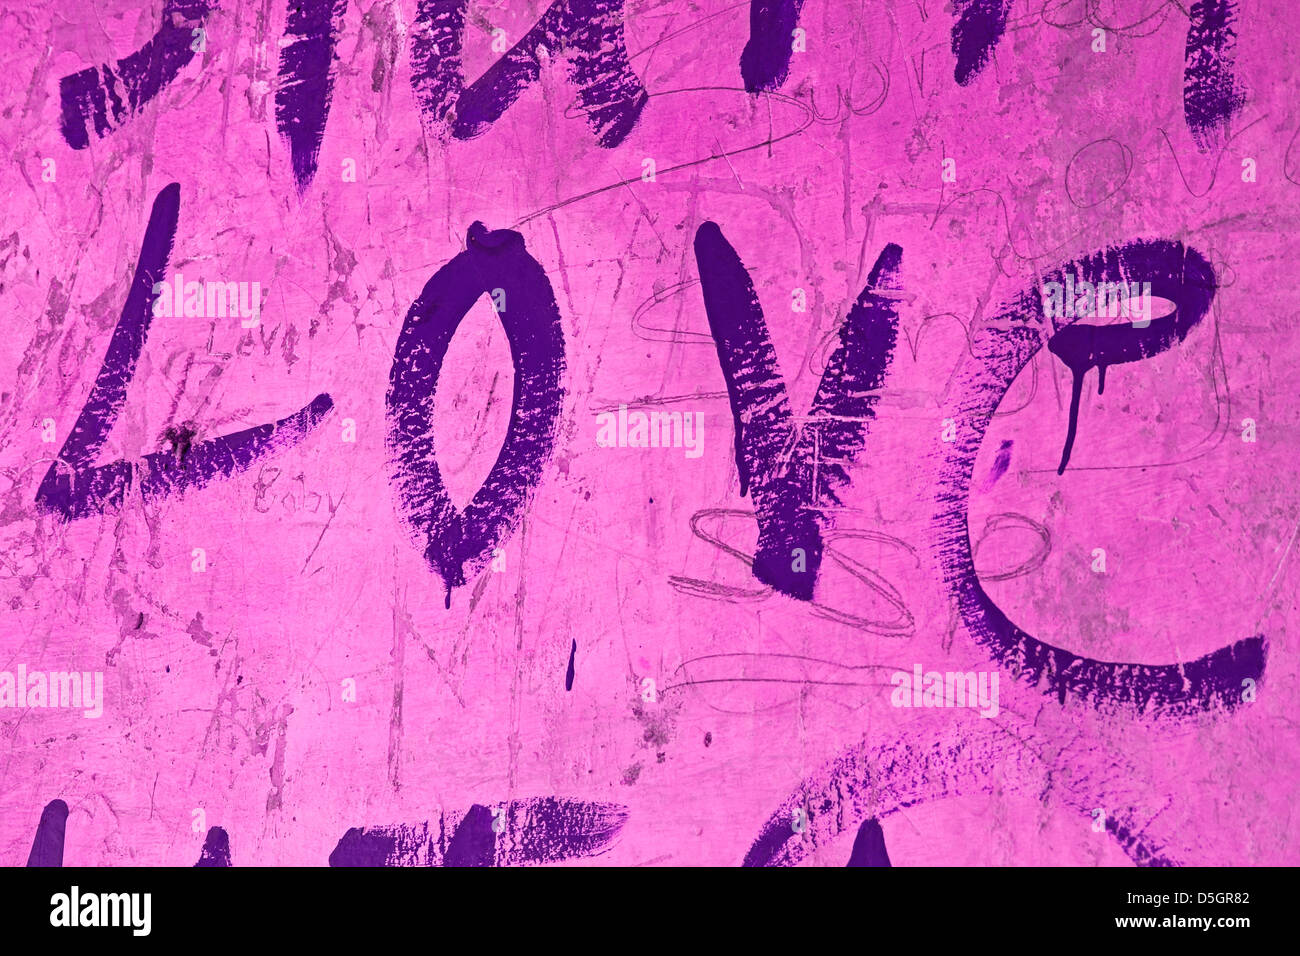 Liebe Liebe Zuneigung Alphabet Kommunikation Konzept konzeptionell Tag Hingabe Emotion Gefühl Idee intime geschrieben geschrieben Stockfoto